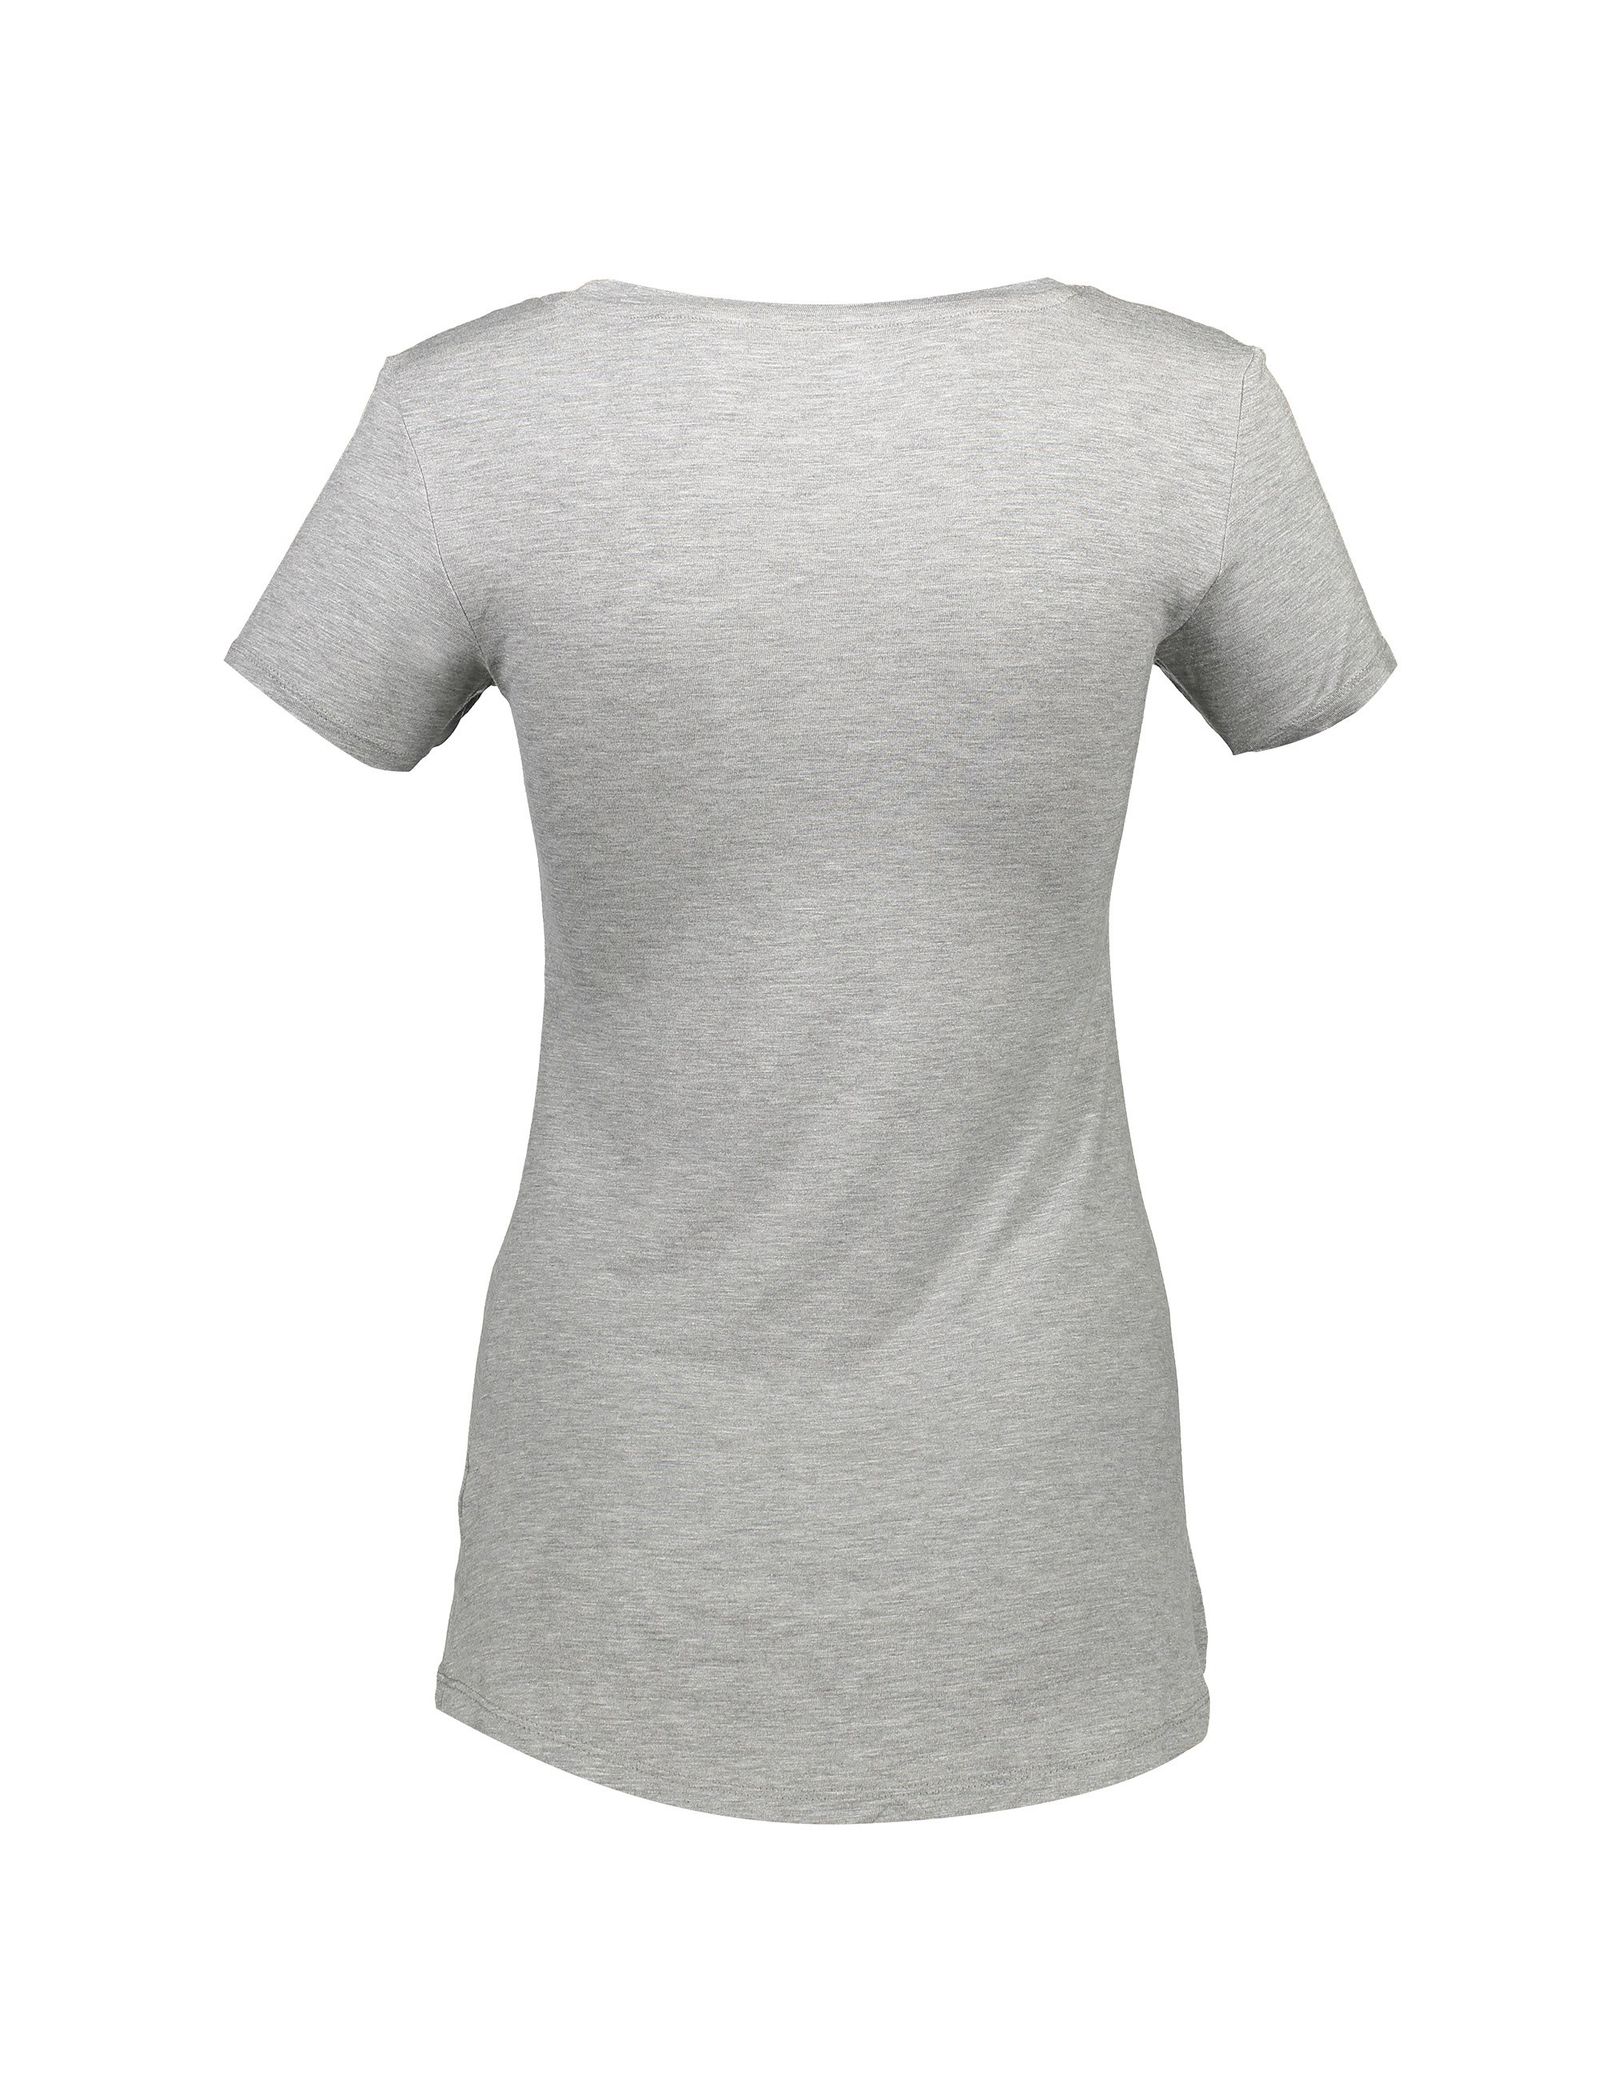 تی شرت راحتی آستین کوتاه زنانه - لاوین رز - طوسي - 3